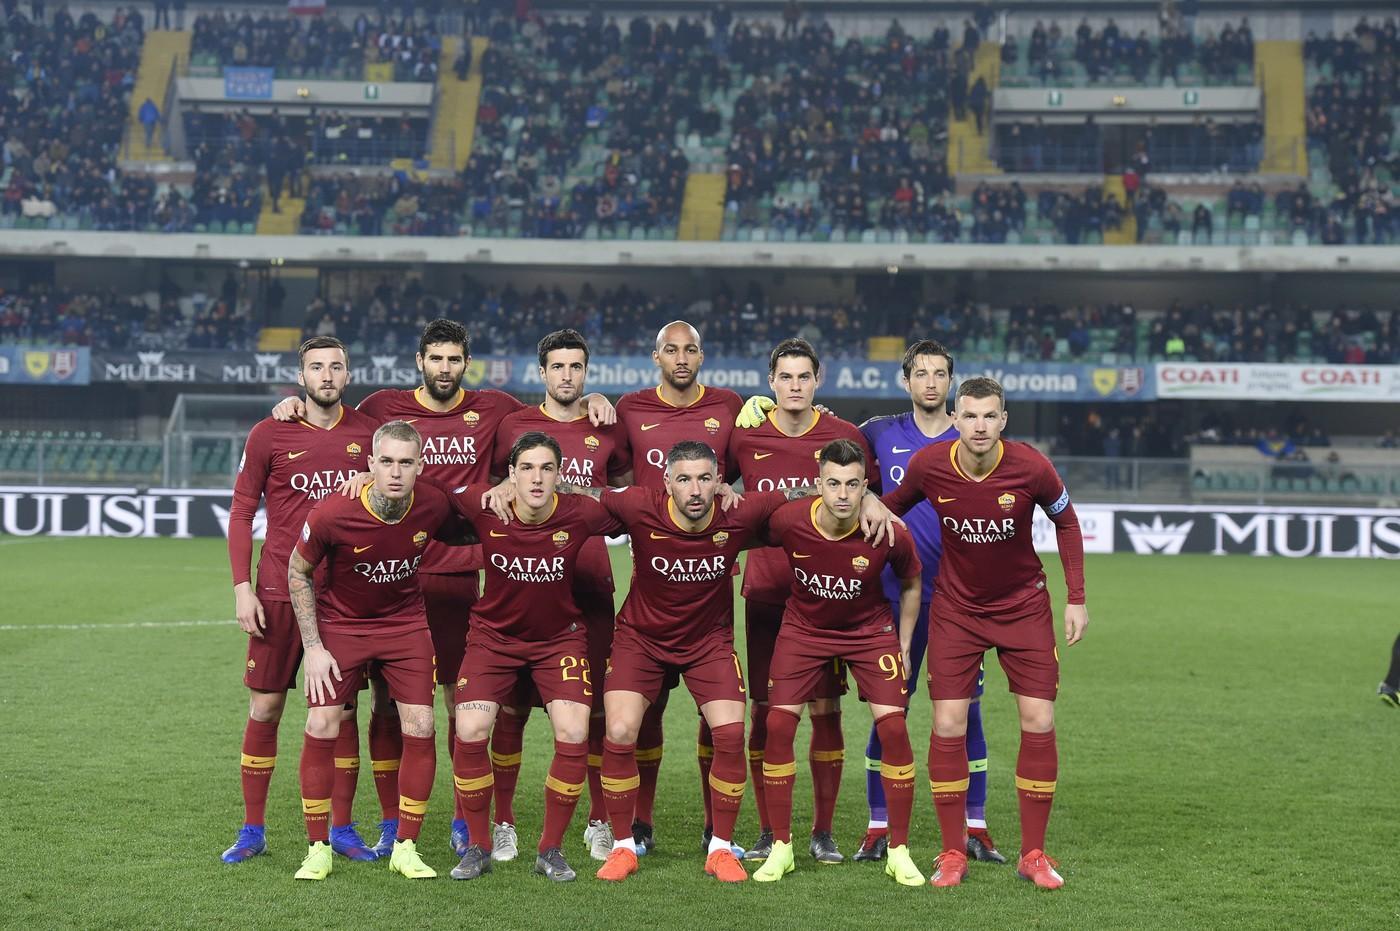 Chievo-Roma 0-3, le pagelle: Dzeko il migliore, Mirante dà sicurezza©LaPresse